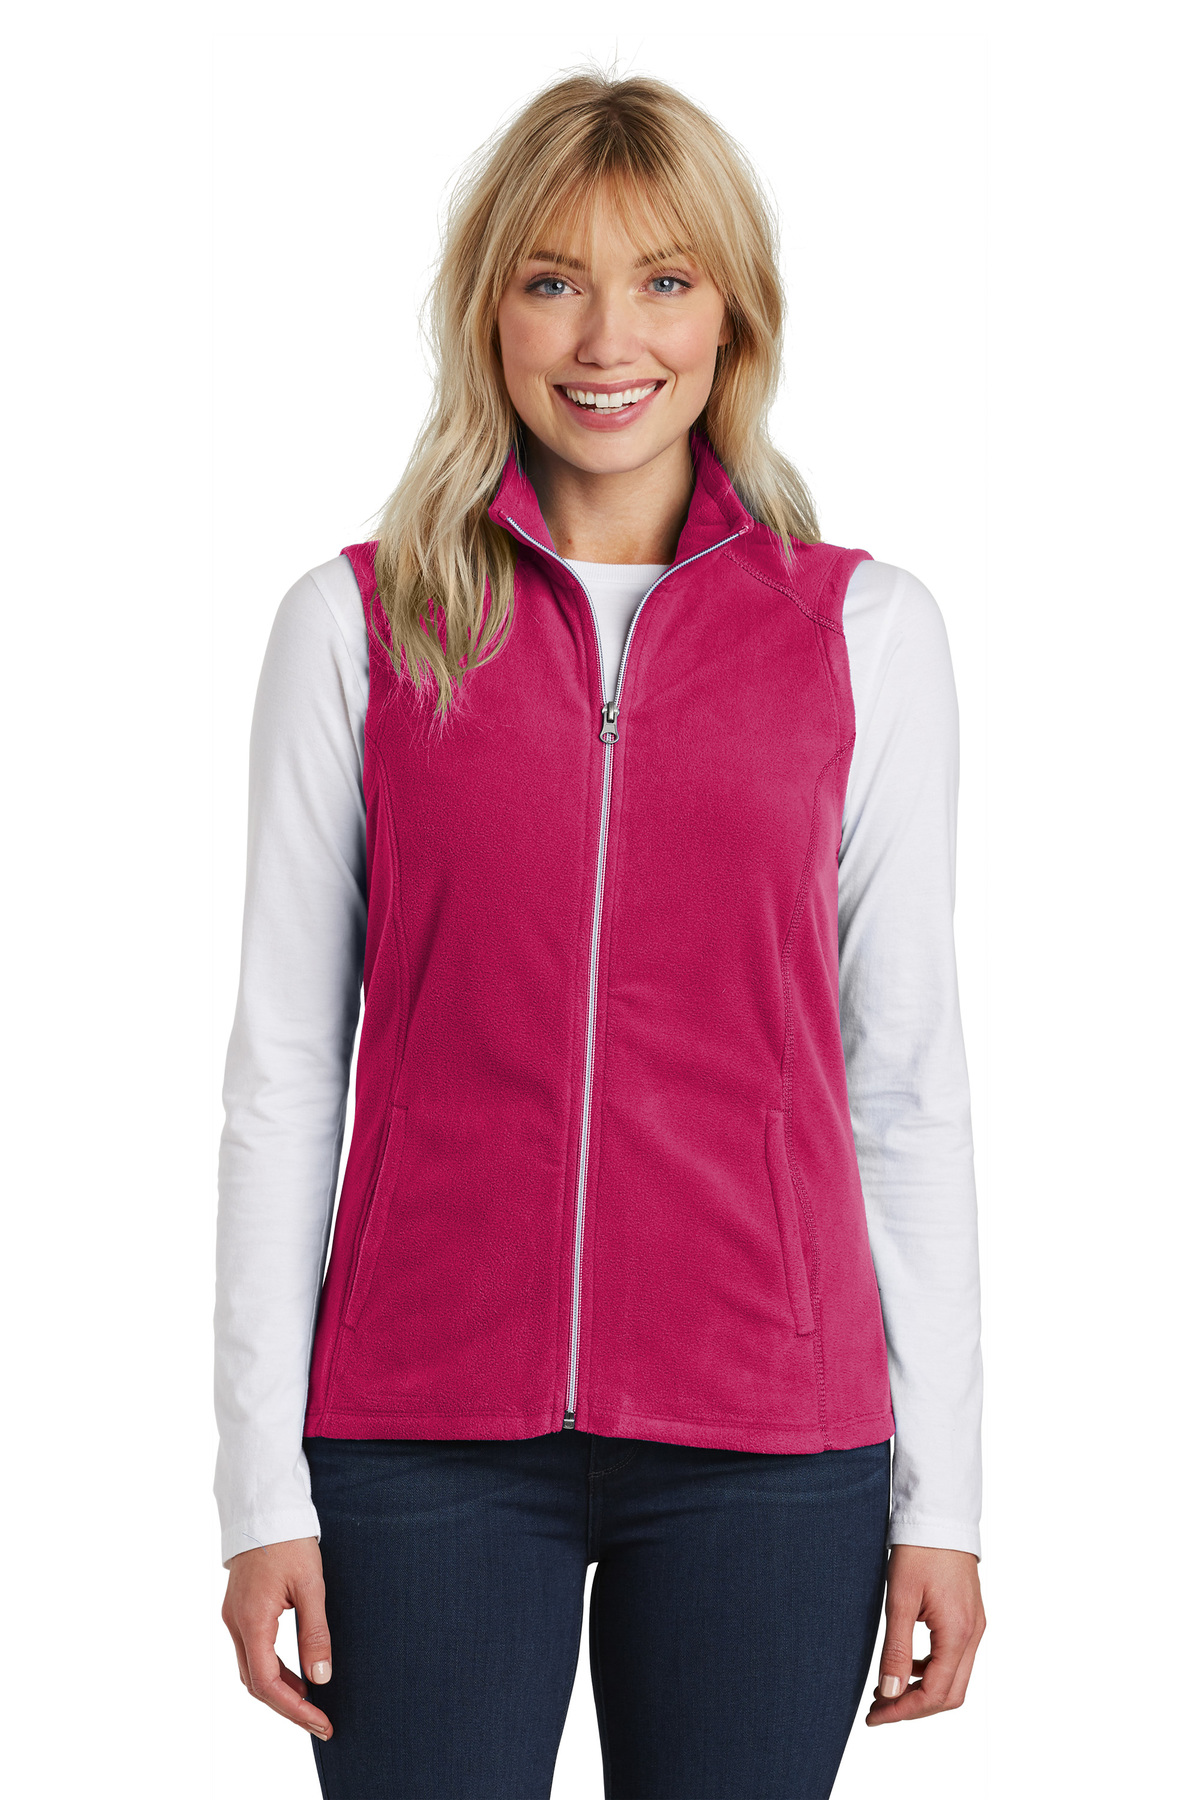  Port Authority - Ladies Value Fleece Vest. L219 - Iron